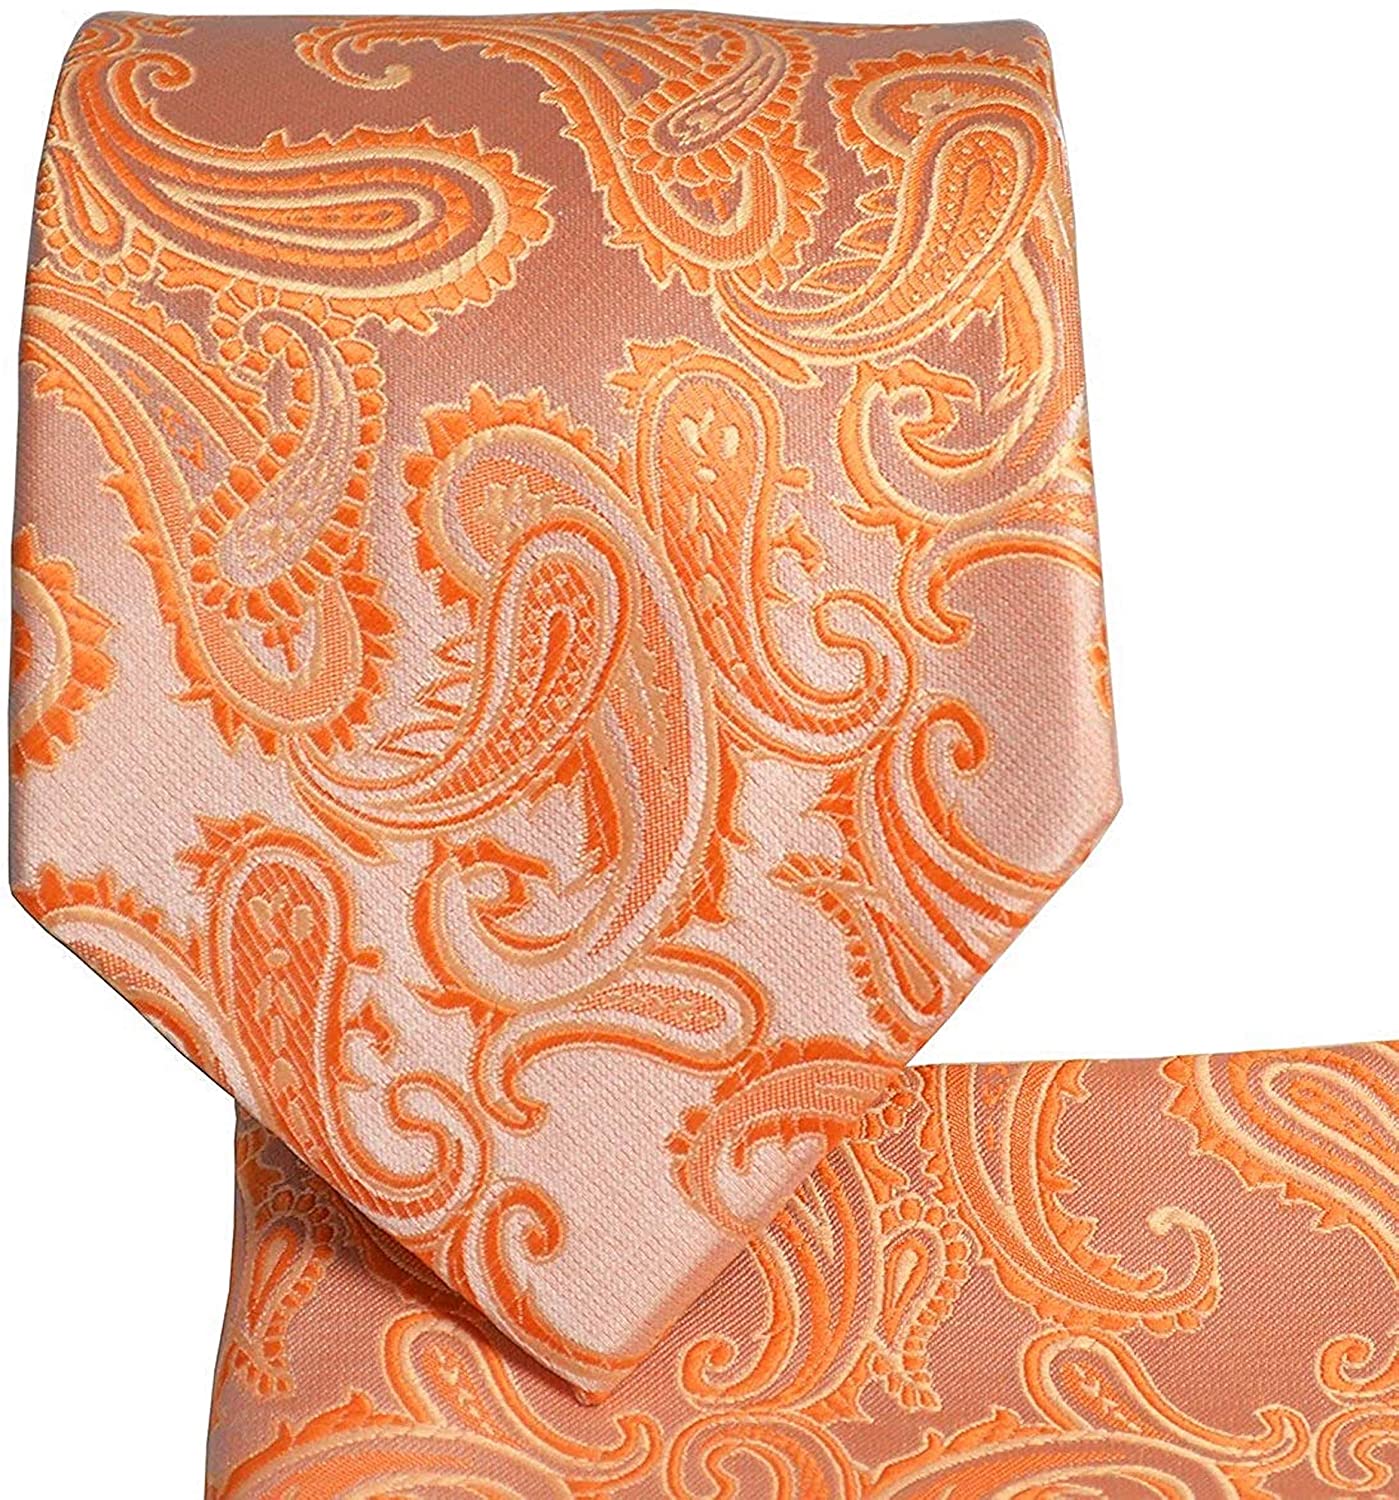 Men Paisley Floral Black Orange Necktie Pocket Square Handkerchief Set Lot HZ063